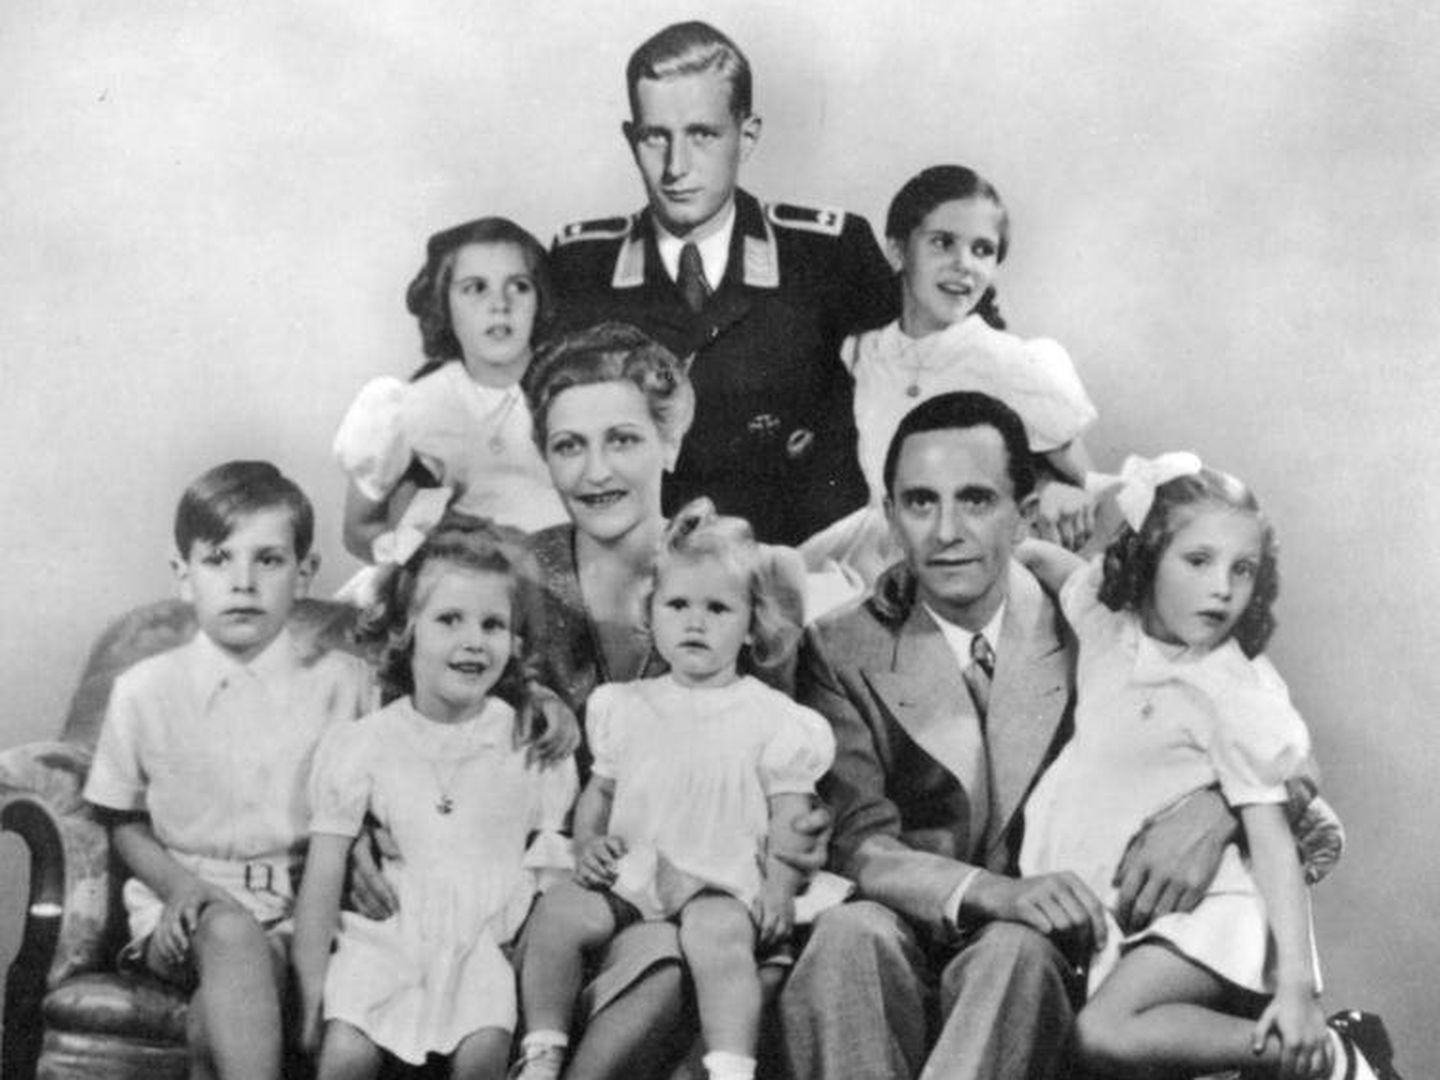 Fotografía de la familia Goebbels manipulada para incluir a su hijastro. (CC / Archivos de la Alemania Federal)